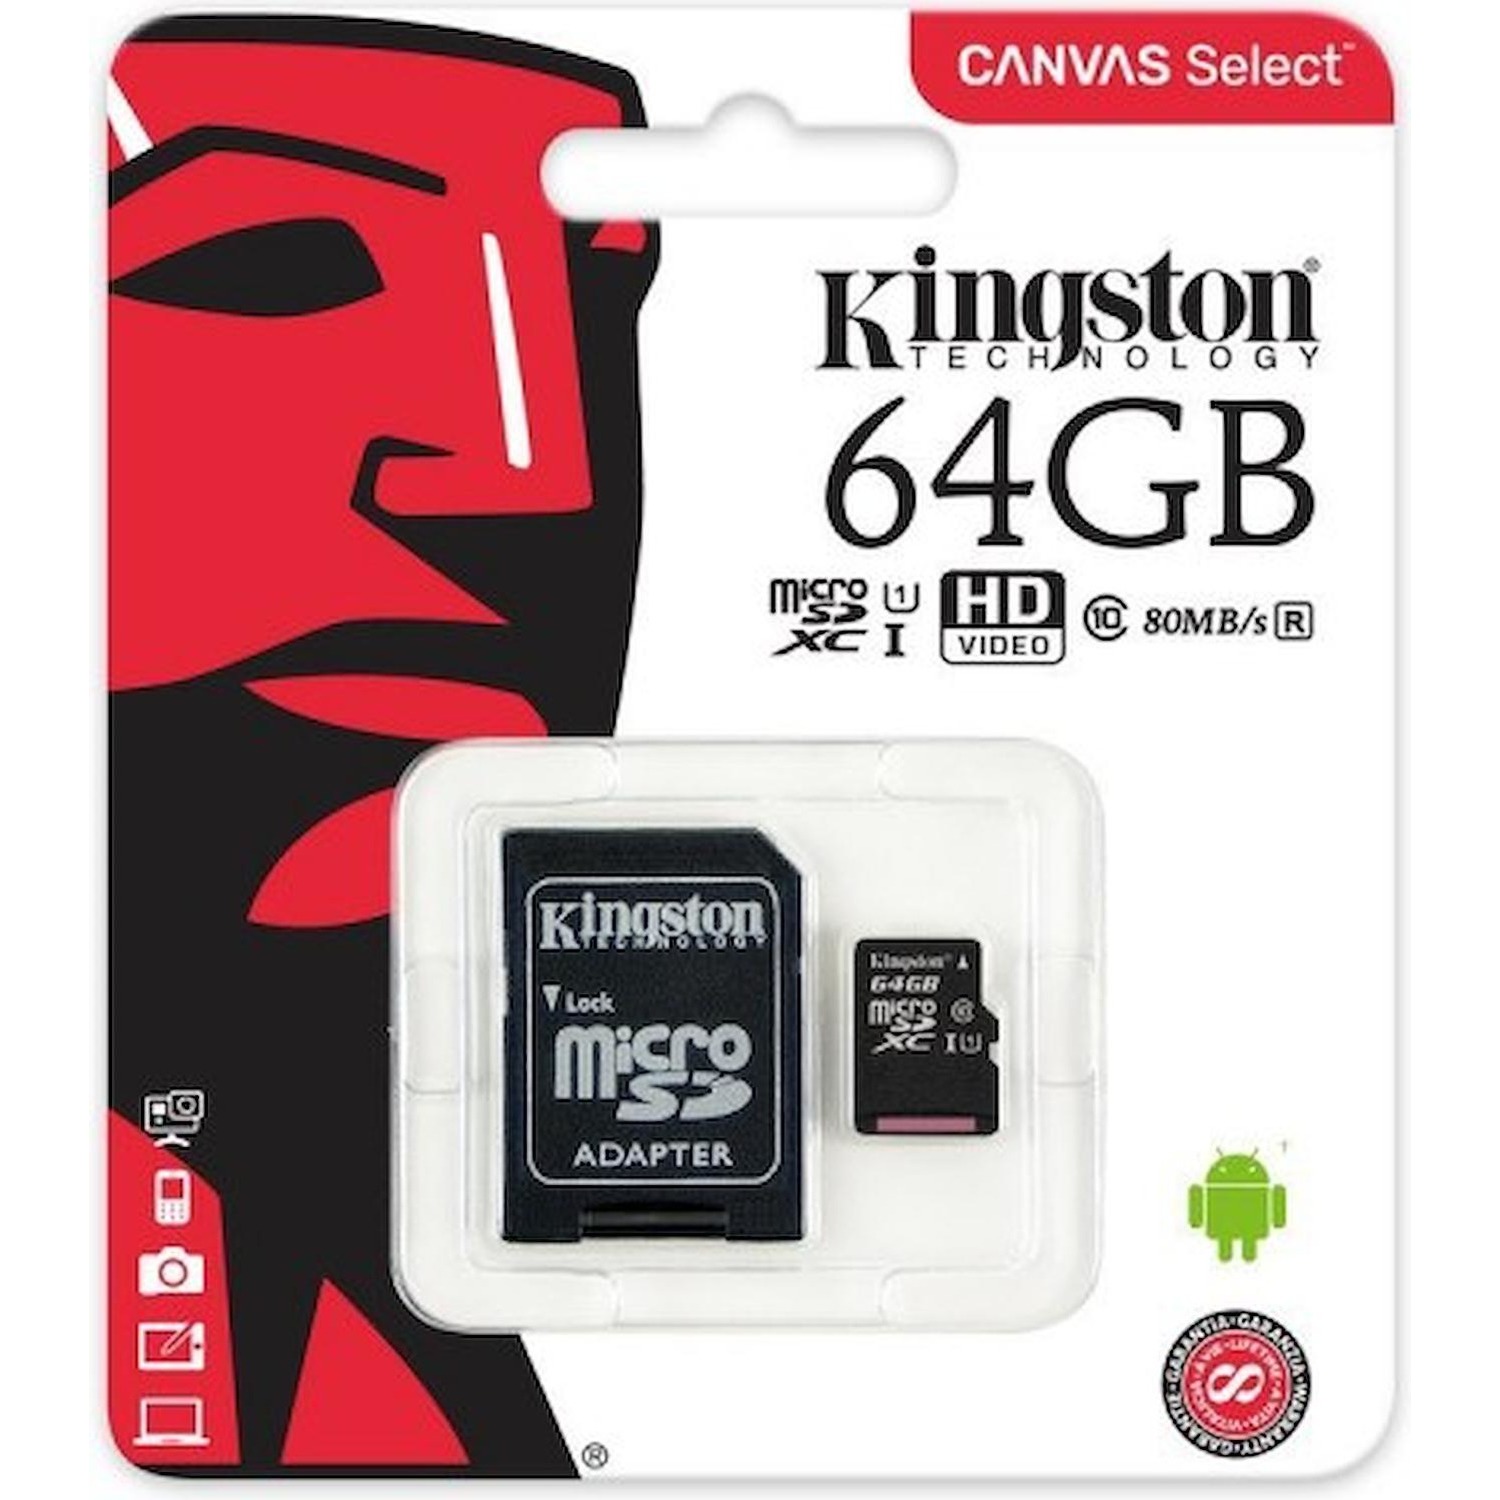 Immagine per MicroSD Kingston 64GB con adattatore xc da DIMOStore